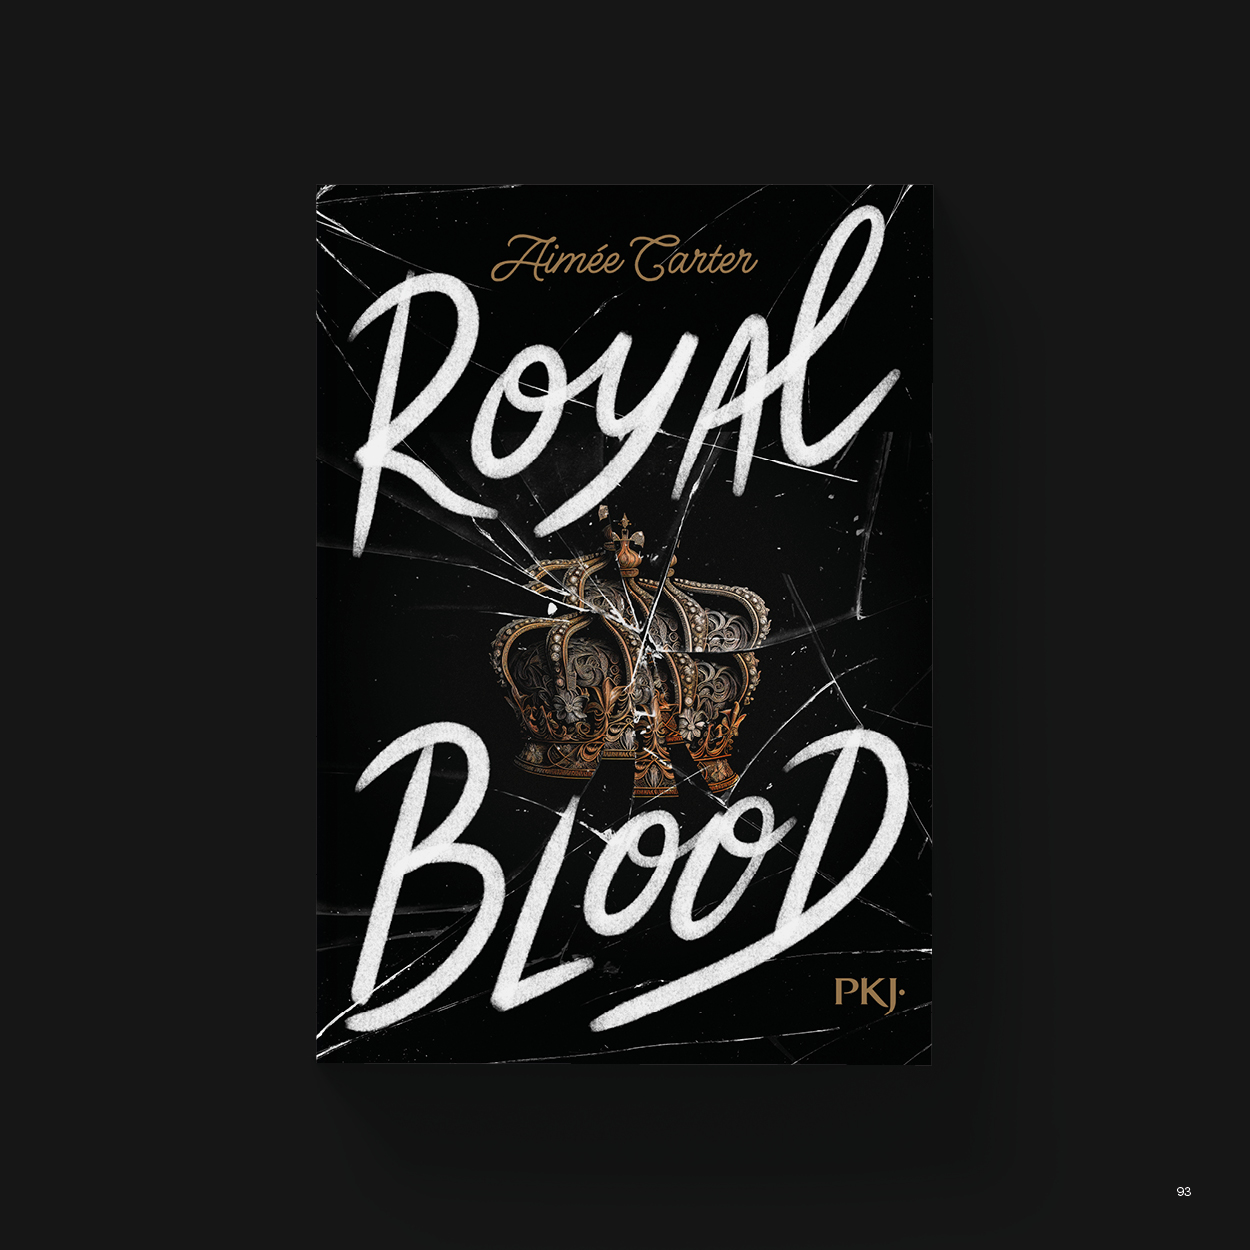 Vue_Royal_blood_93